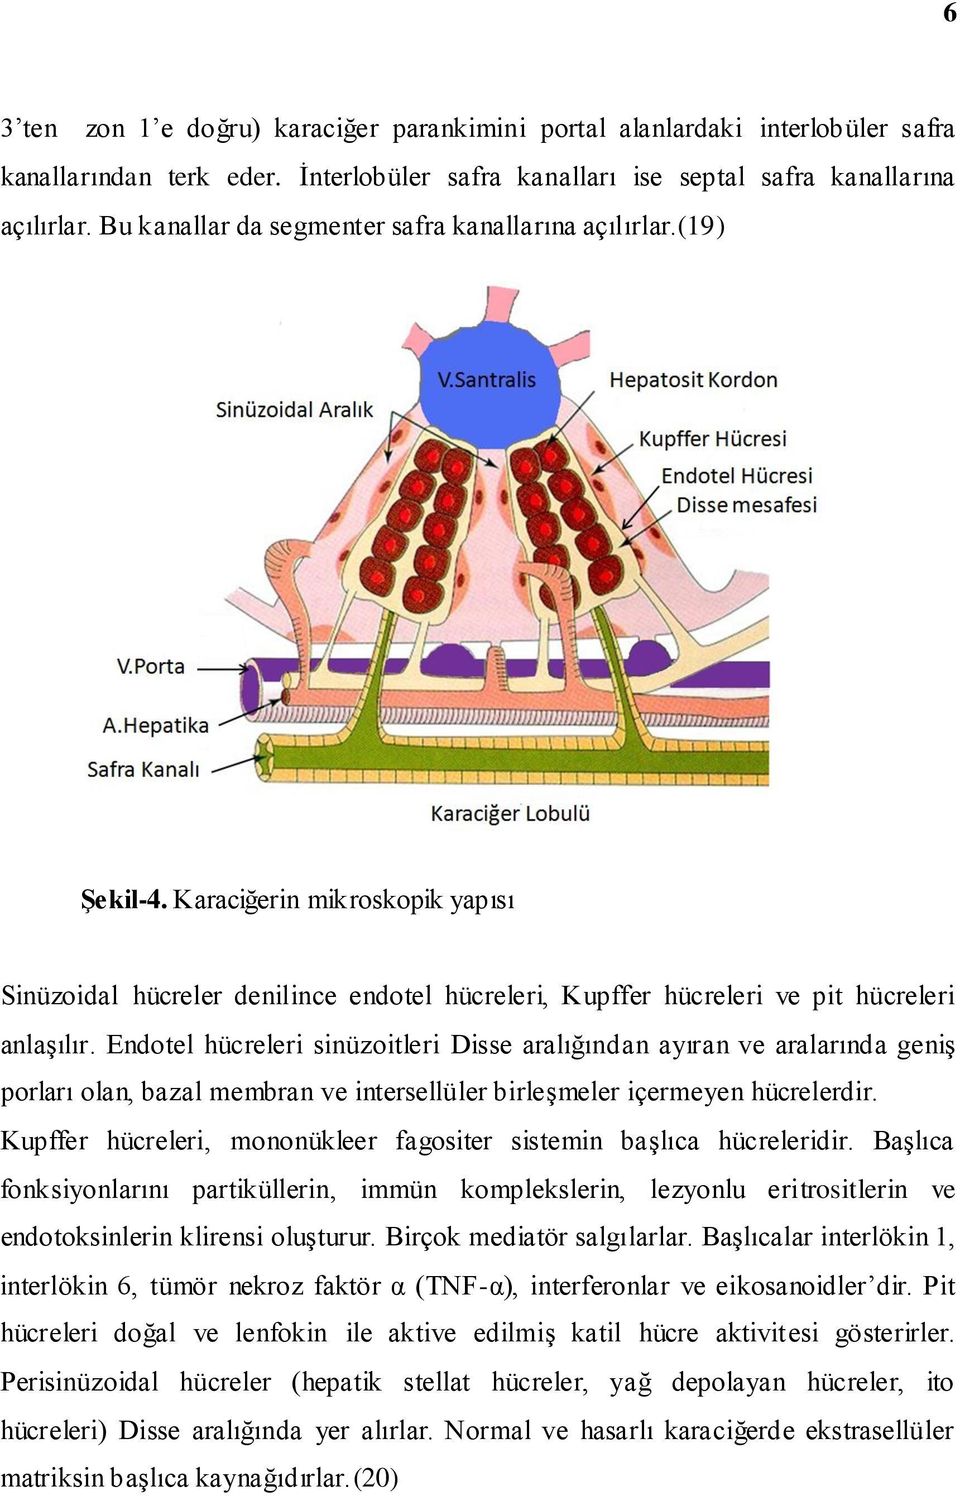 Endotel hücreleri sinüzoitleri Disse aralığından ayıran ve aralarında geniş porları olan, bazal membran ve intersellüler birleşmeler içermeyen hücrelerdir.